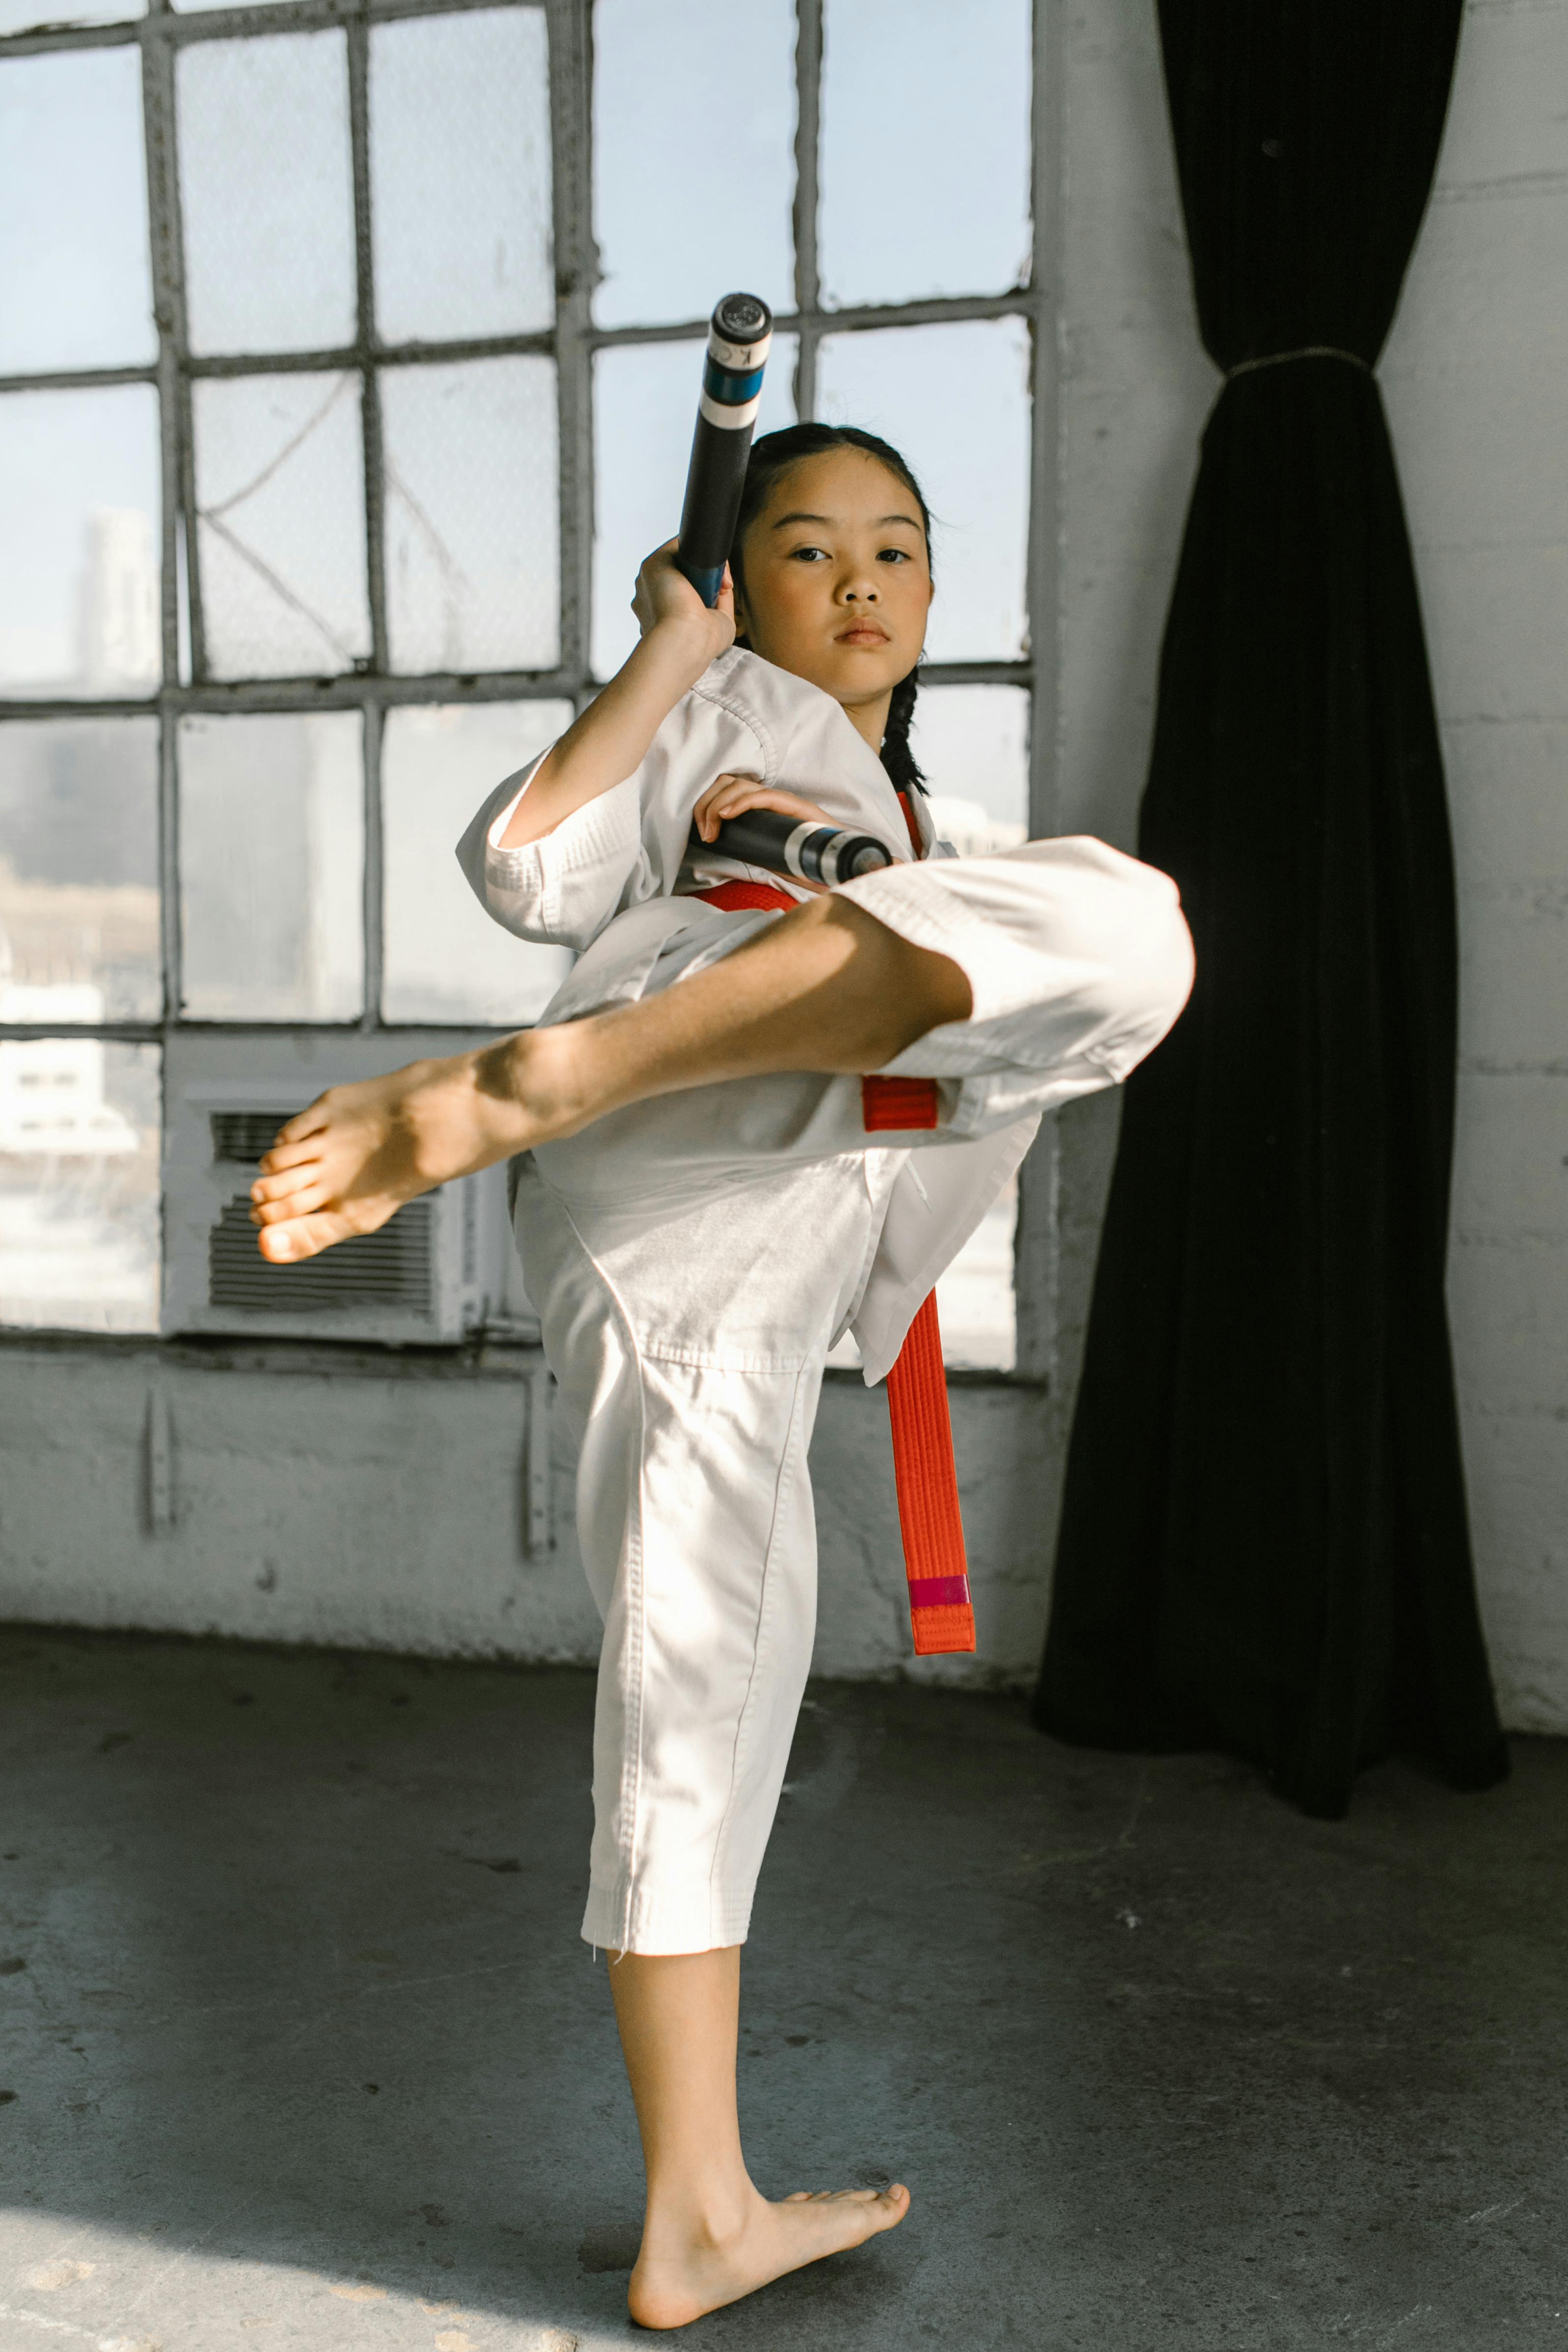 Karate Đá Hình ảnh Sẵn có - Tải xuống Hình ảnh Ngay bây giờ - Karate, Nền  đen, Bảo vệ - Khái niệm - iStock